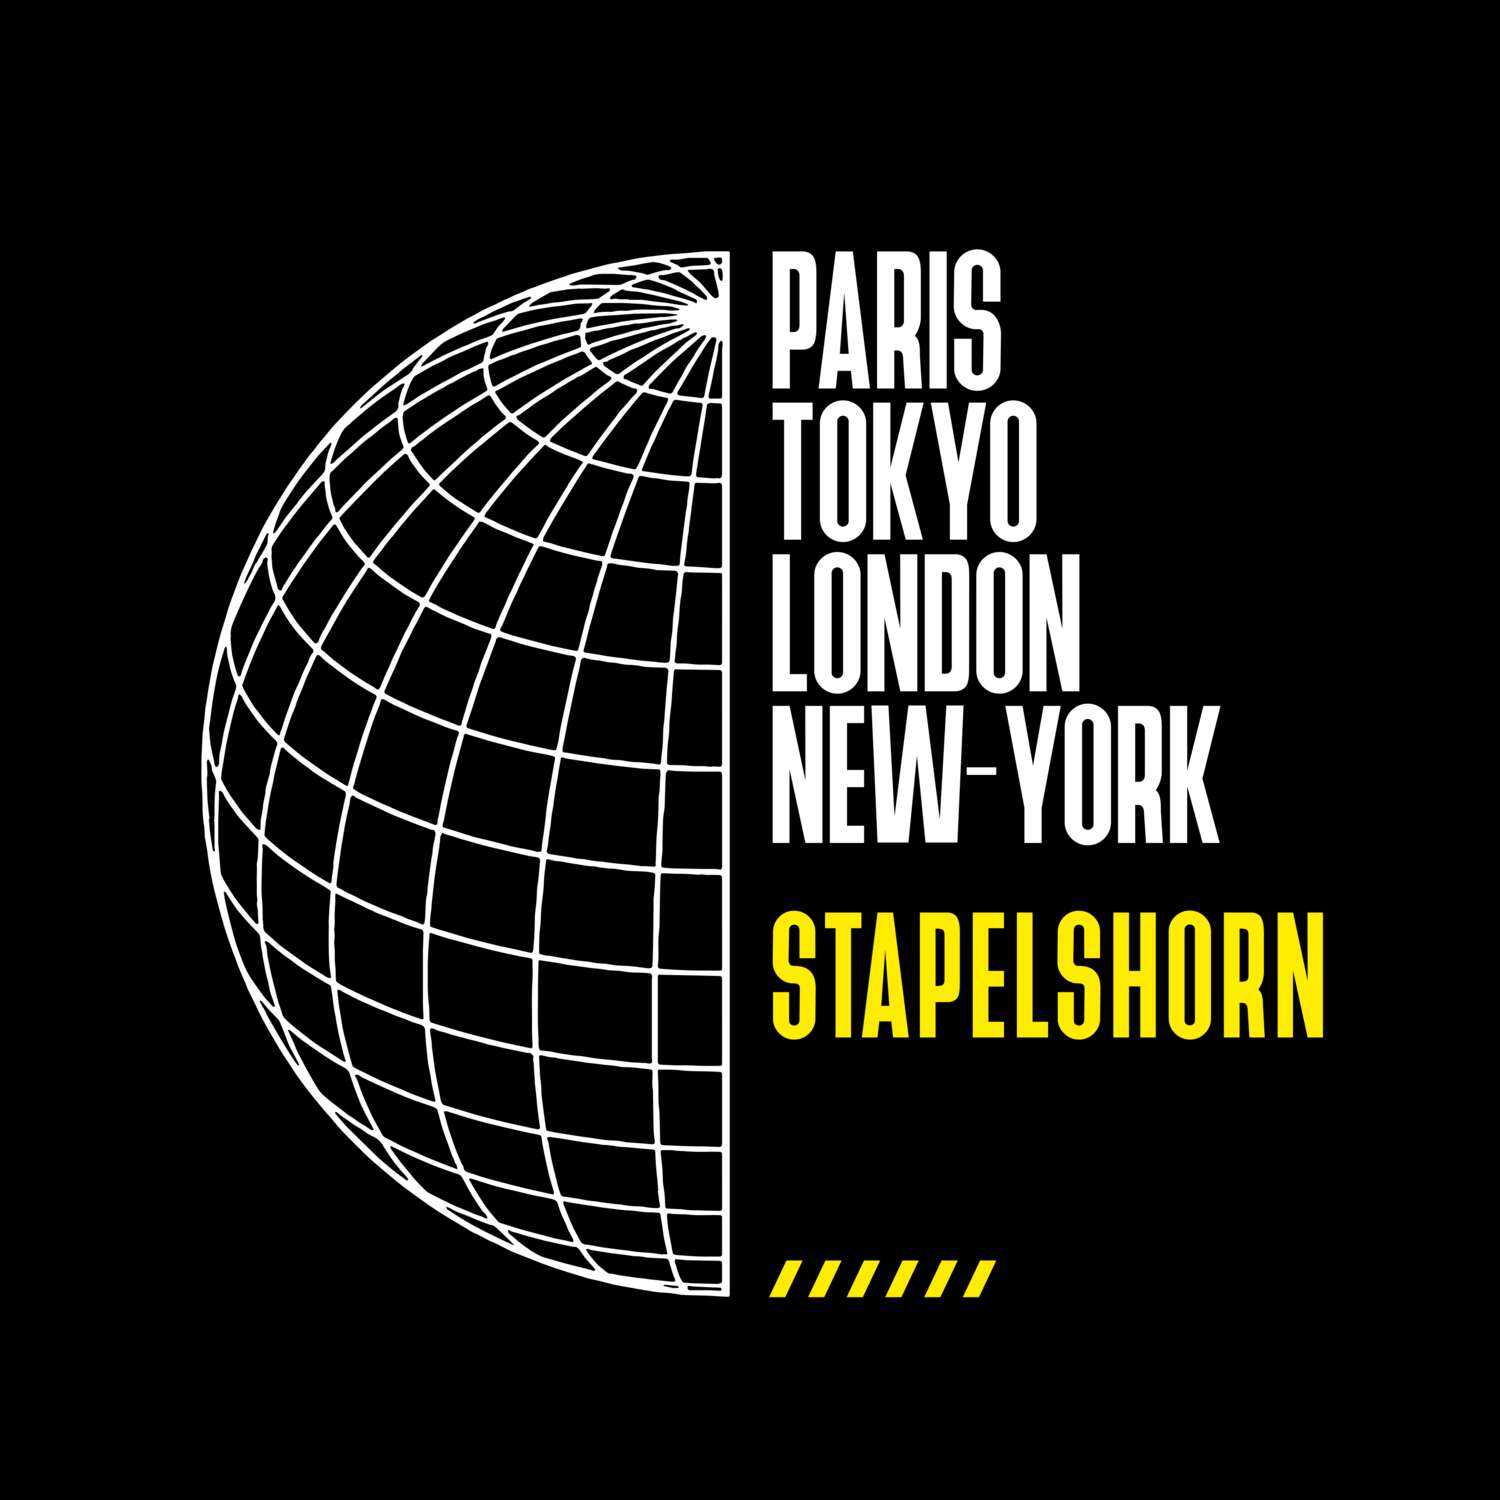 Stapelshorn T-Shirt »Paris Tokyo London«